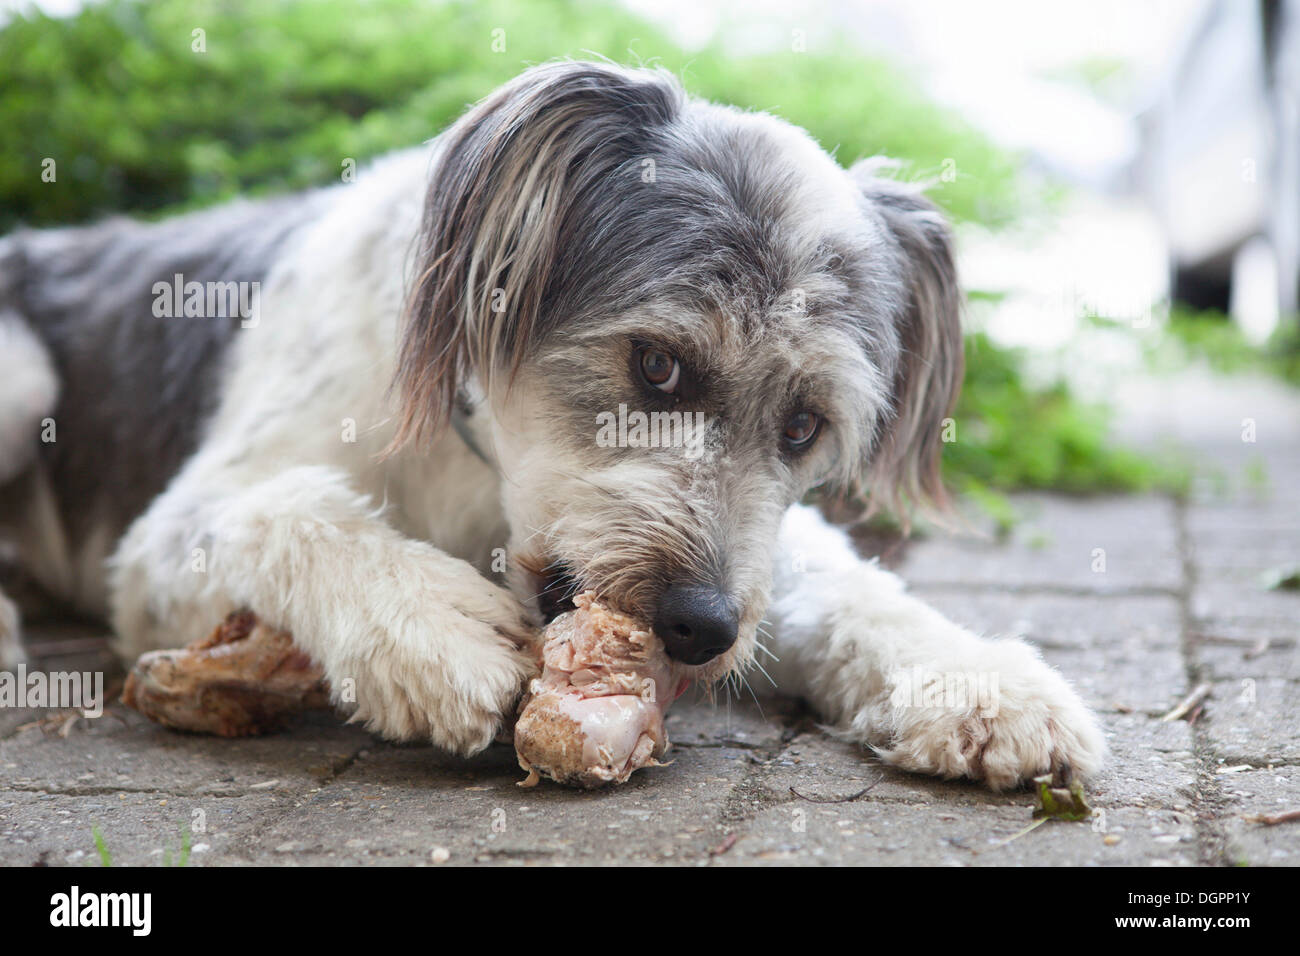 Hund an einem Knochen nagen Stockfoto